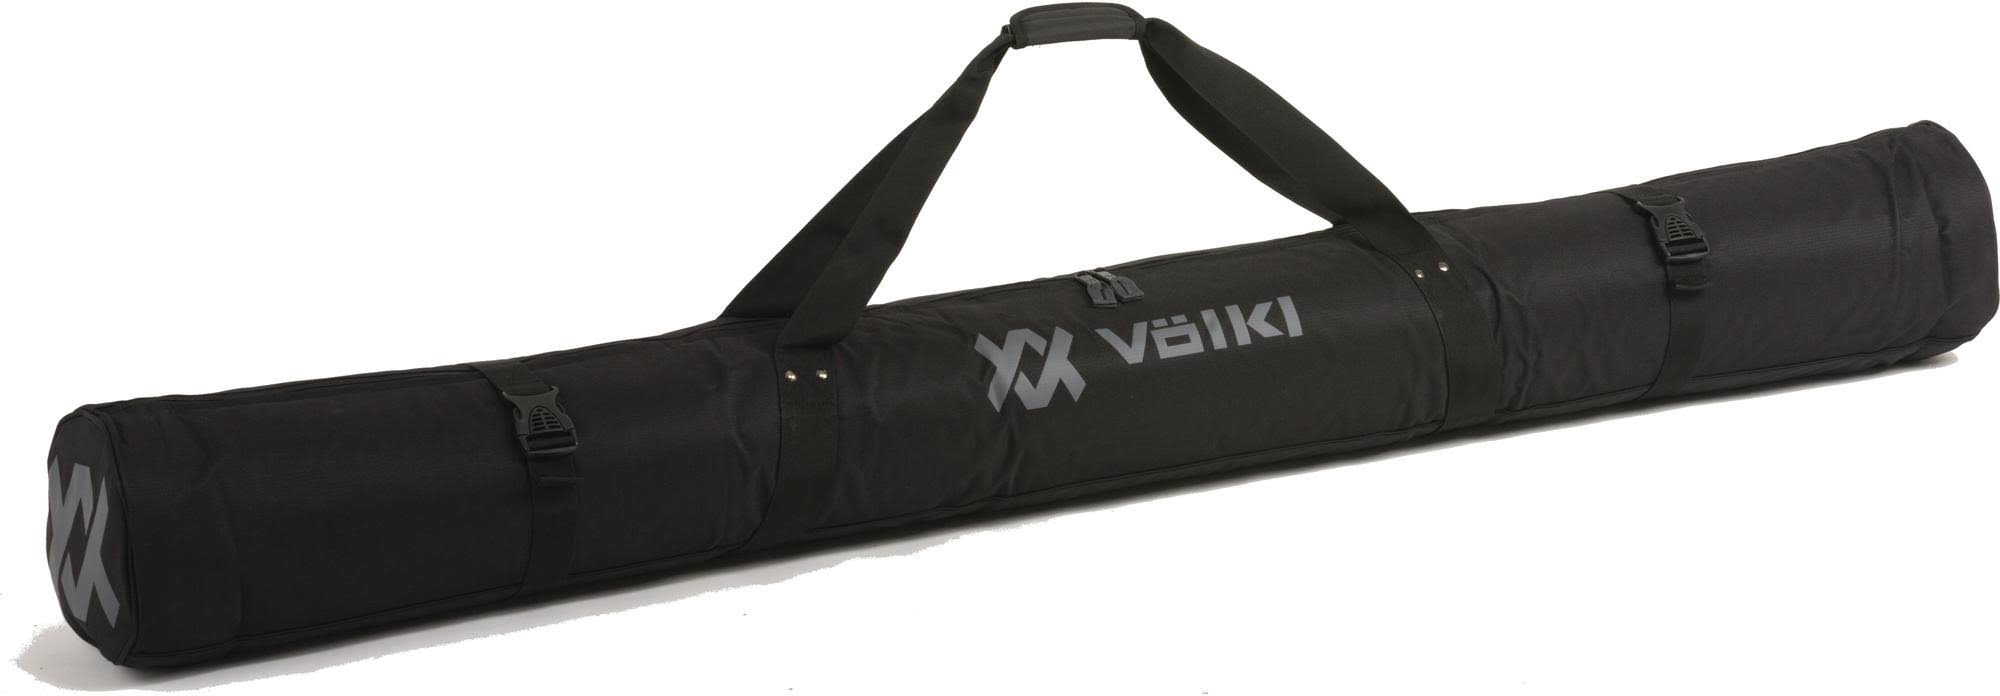 Volkl Single Ski Bag - 170cm